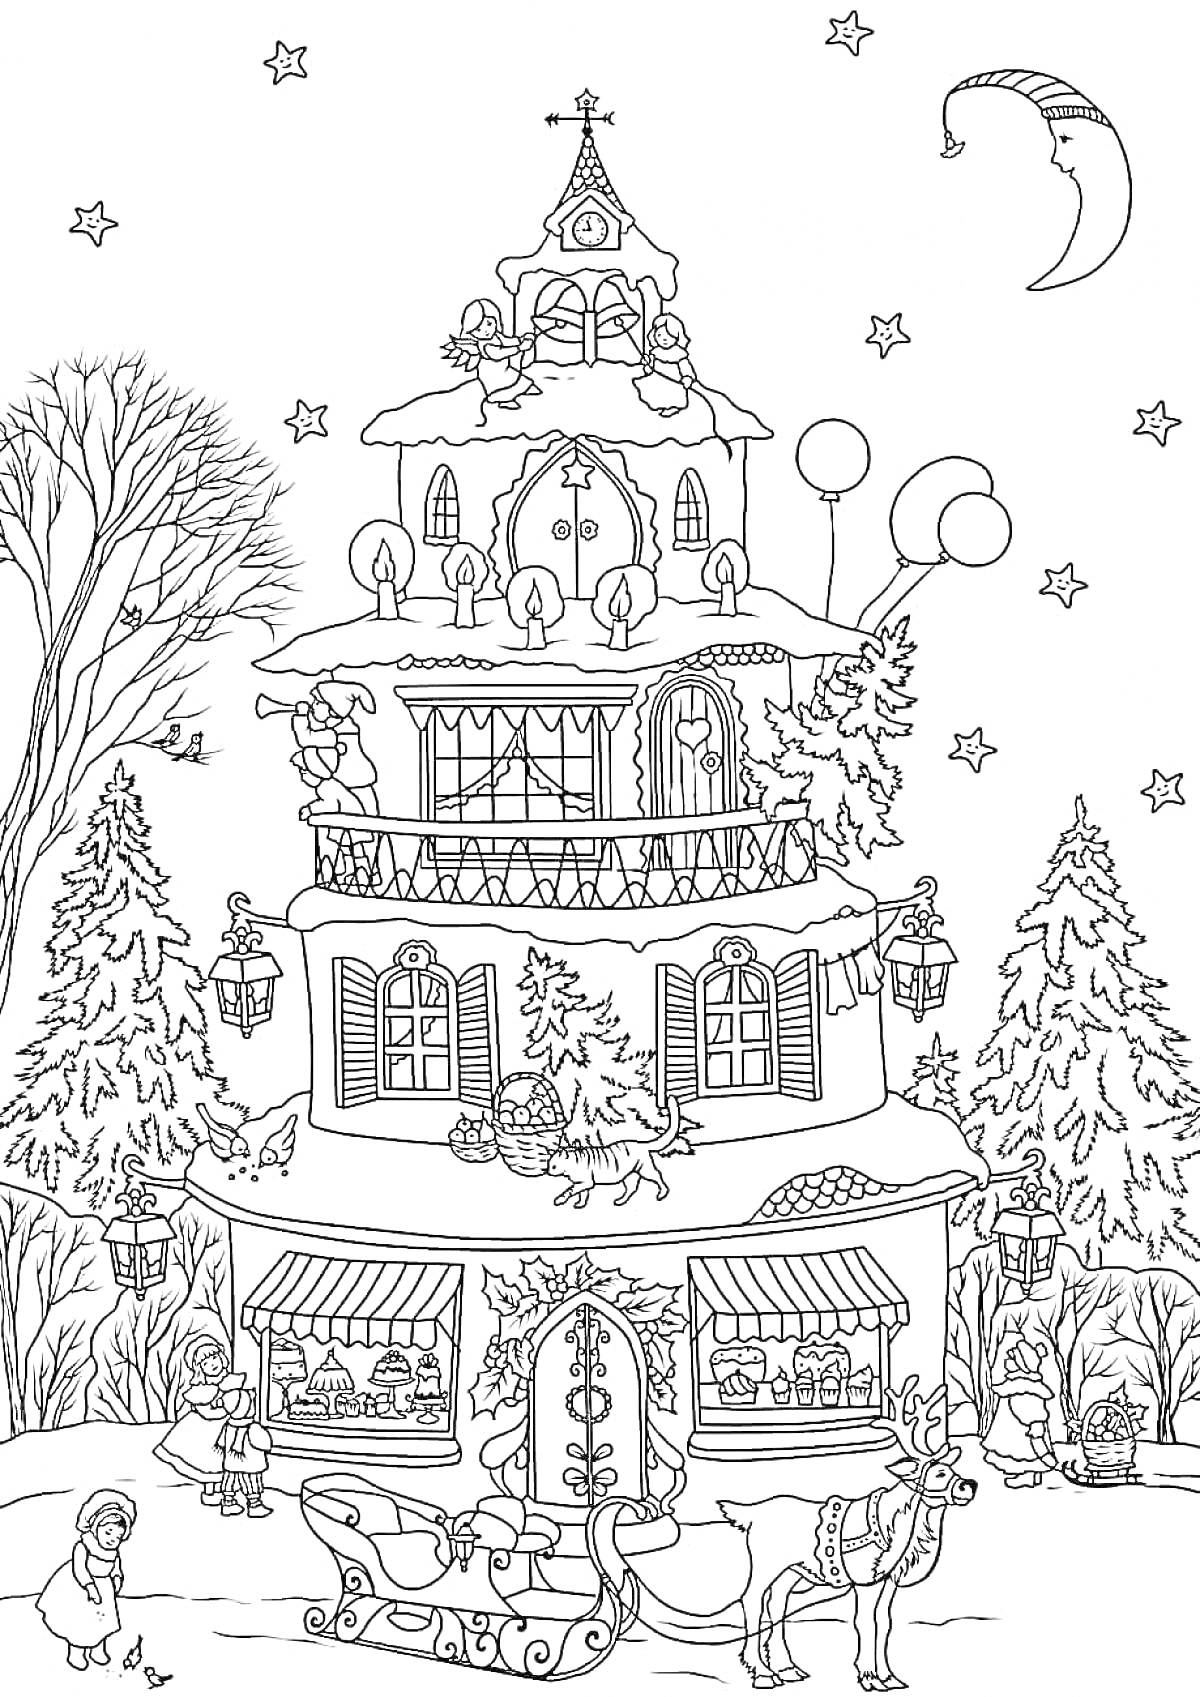 Раскраска Рождественское здание с украшениями, санями и оленем